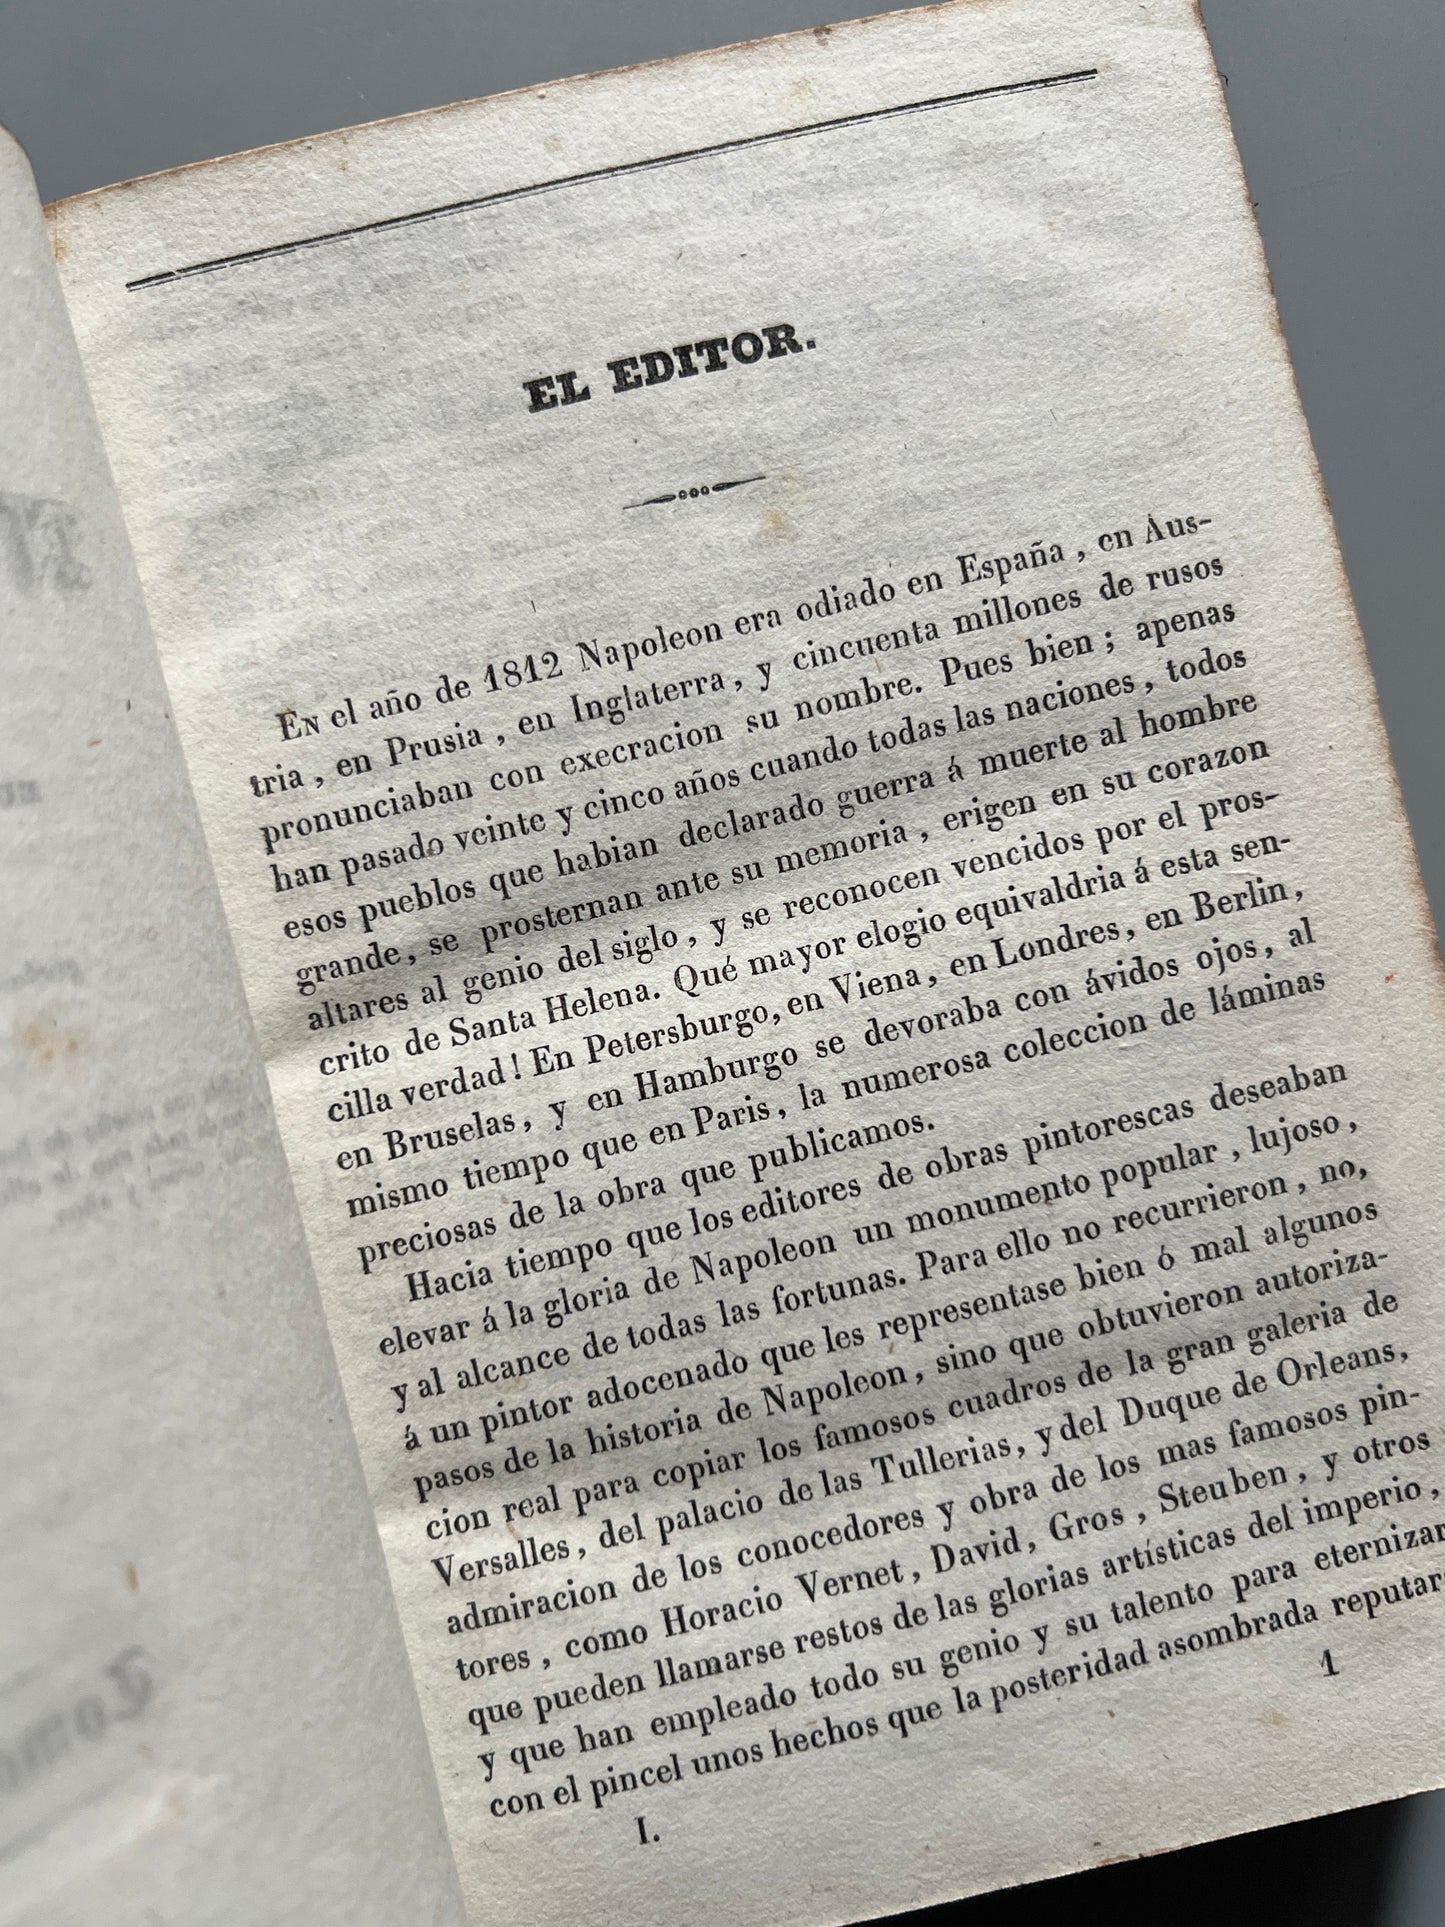 Historia del emperador Napoleón, F. P. - Imprenta de Joaquín Verdaguer, 1839